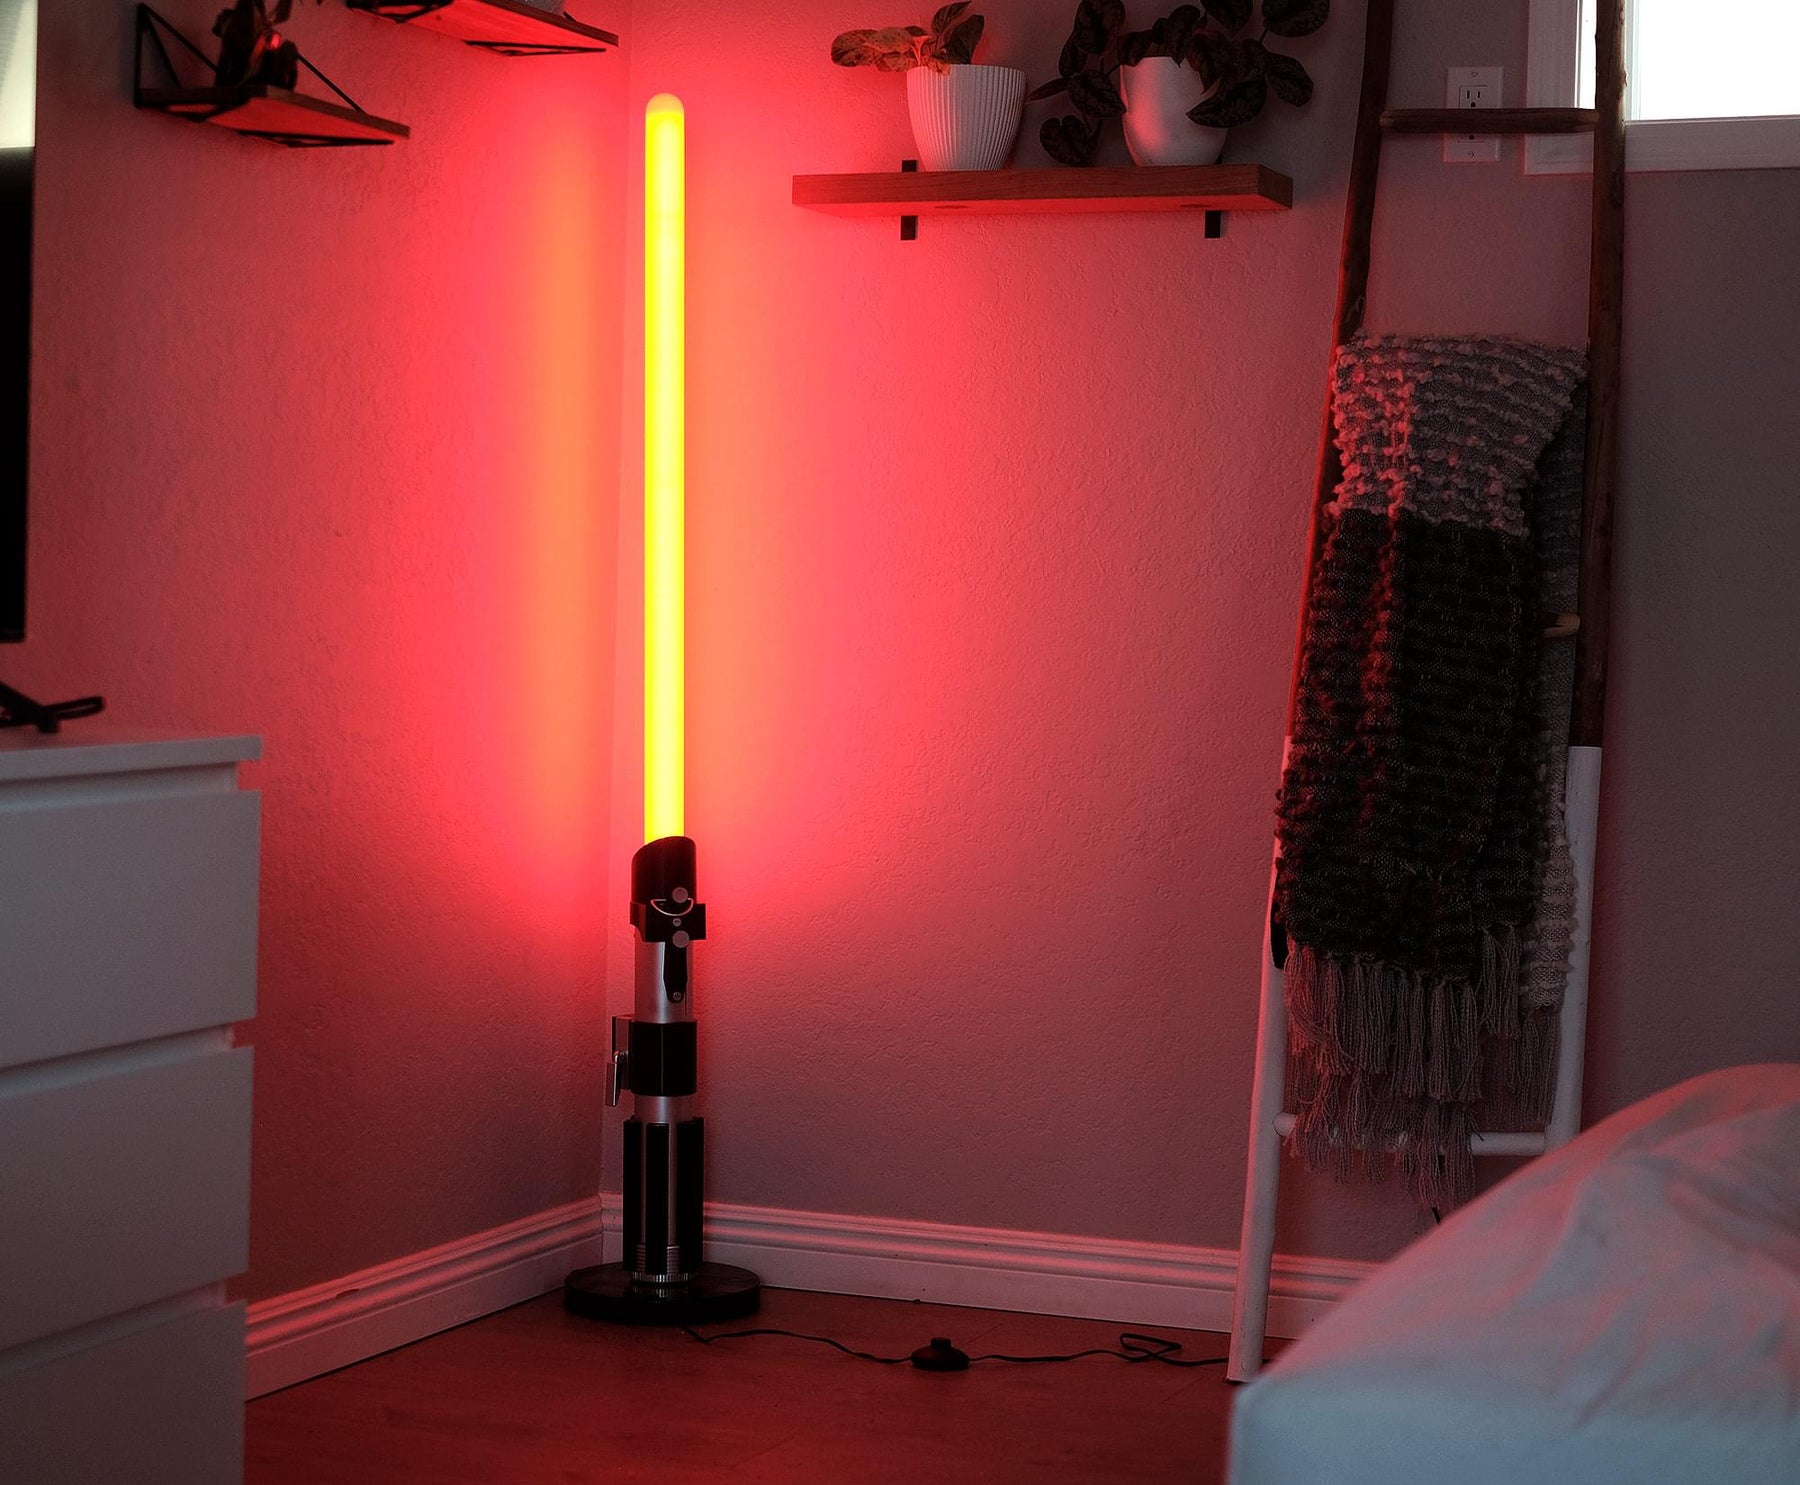 Star Wars Darth Vader Lightsaber Standing Lamp | 5 Feet Tall